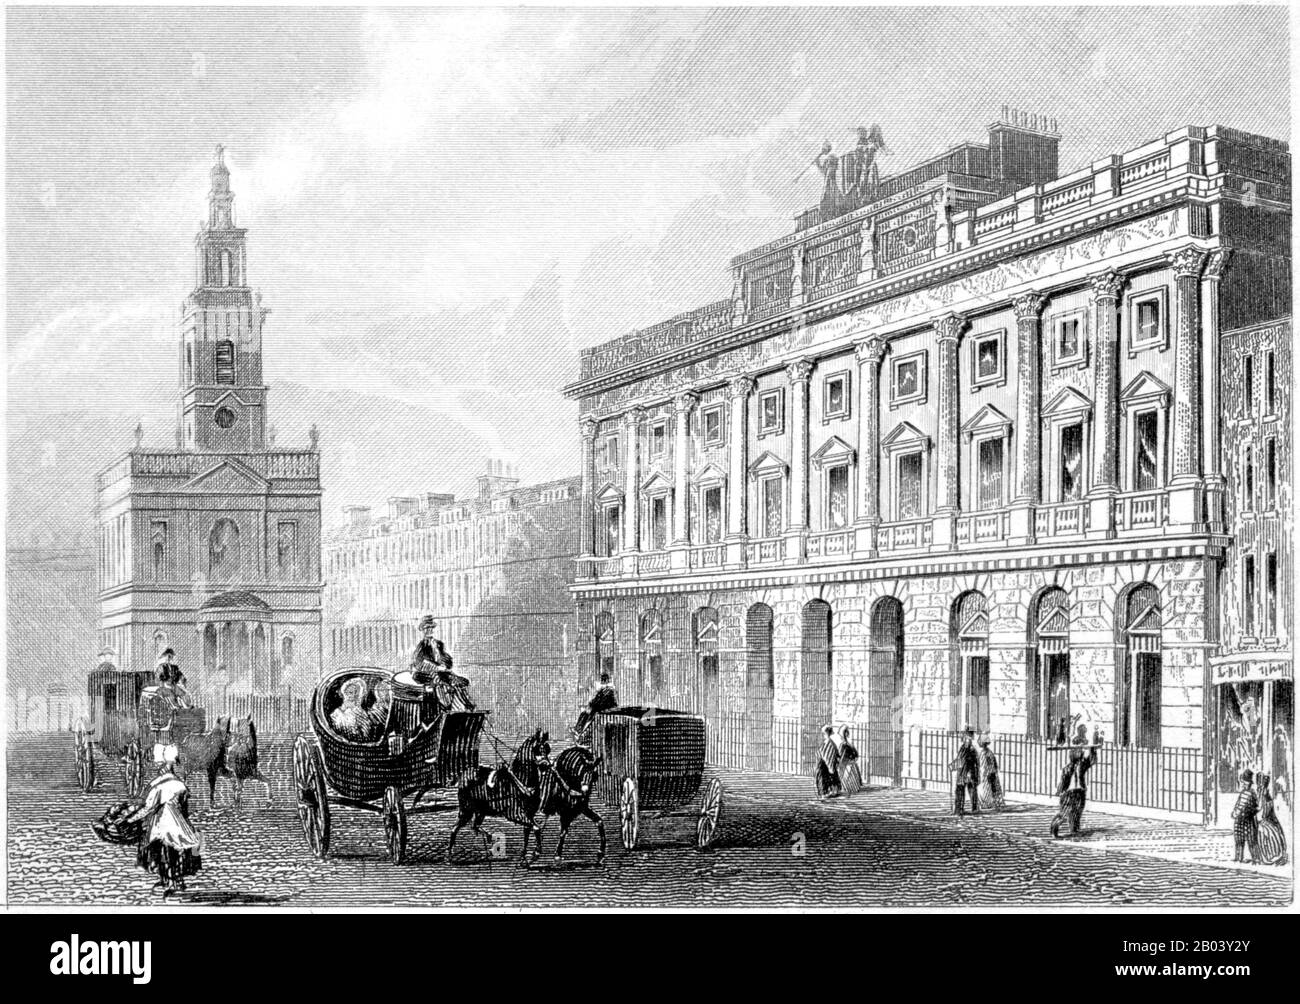 Eine Gravur des Somerset House, Strand, London, gescannte in hoher Auflösung aus einem Buch, das im Jahr 1851 gedruckt wurde. Ich glaube, dass das Urheberrecht frei ist. Stockfoto